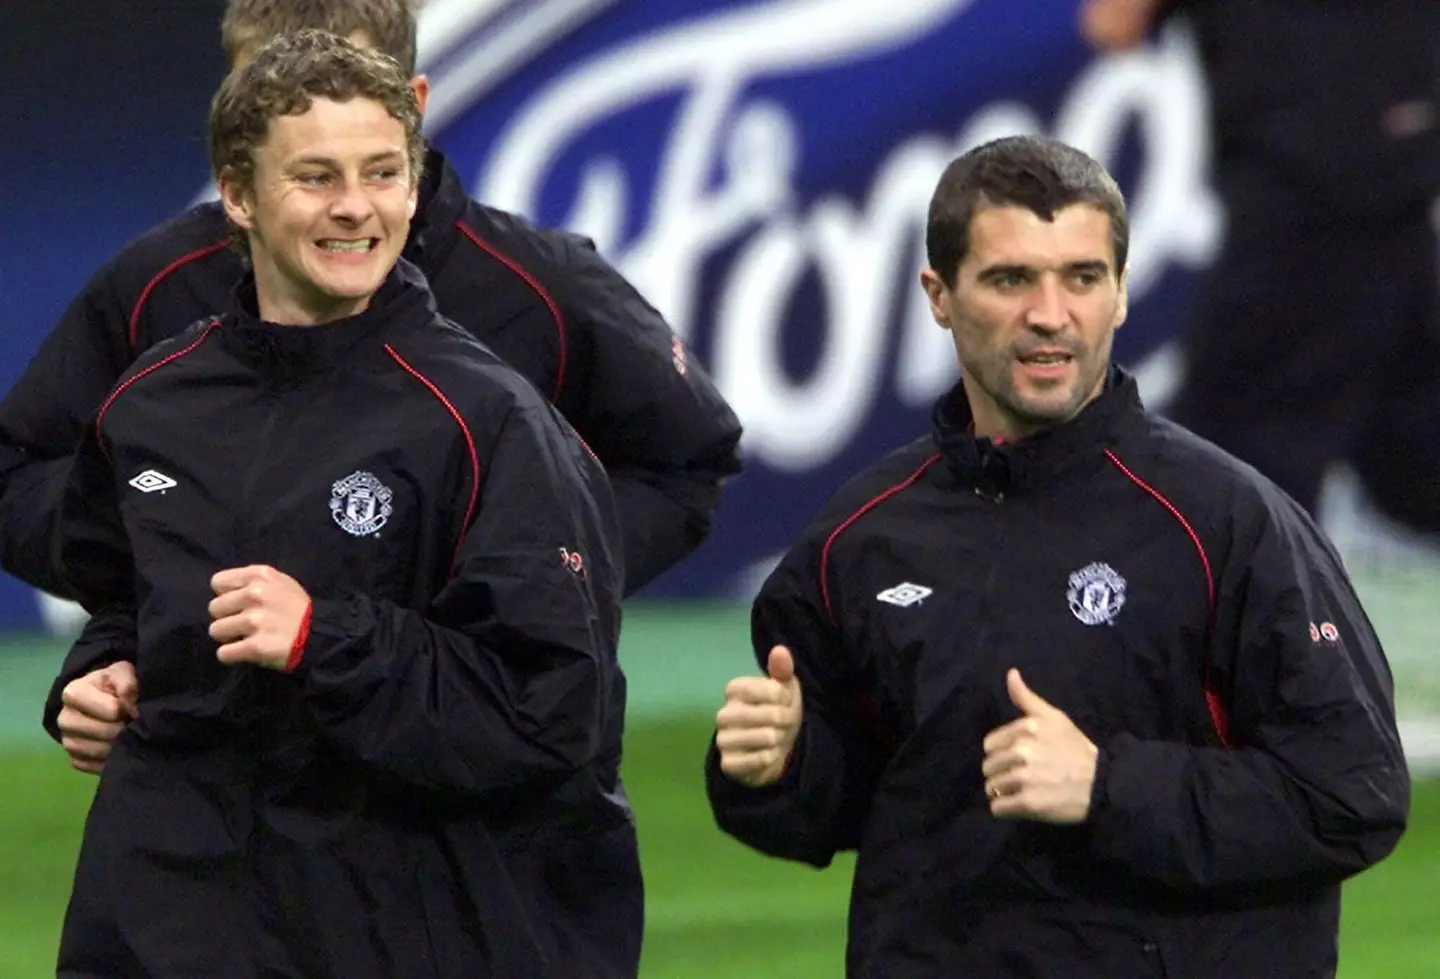 Solskjaer and Keane in United training. (Image